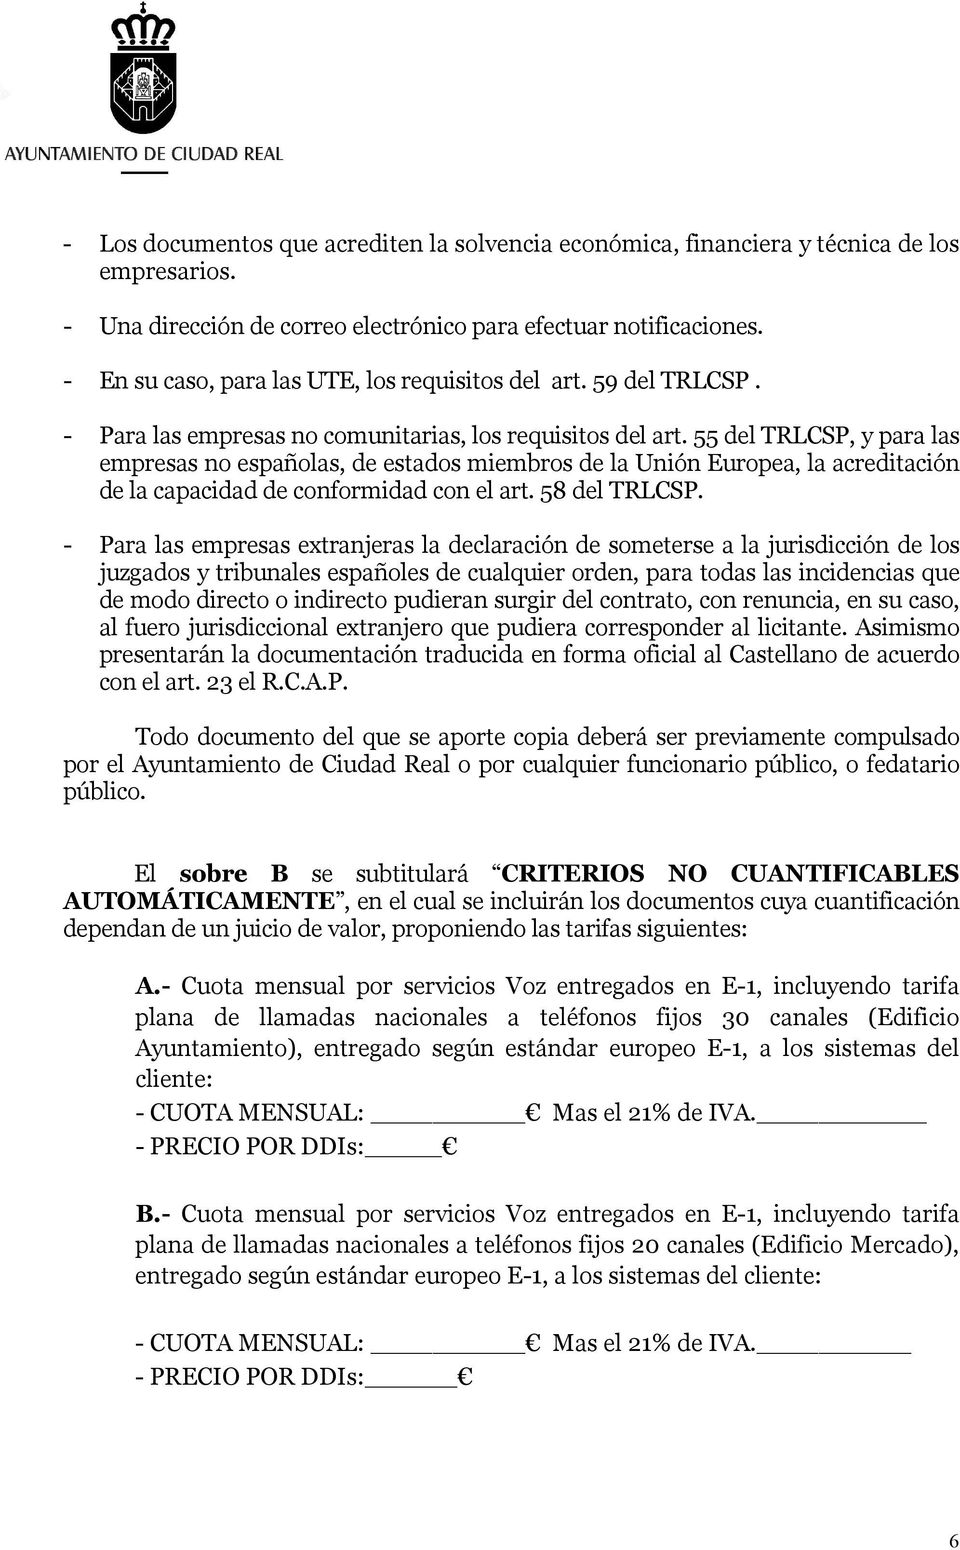 55 del TRLCSP, y para las empresas no españolas, de estados miembros de la Unión Europea, la acreditación de la capacidad de conformidad con el art. 58 del TRLCSP.